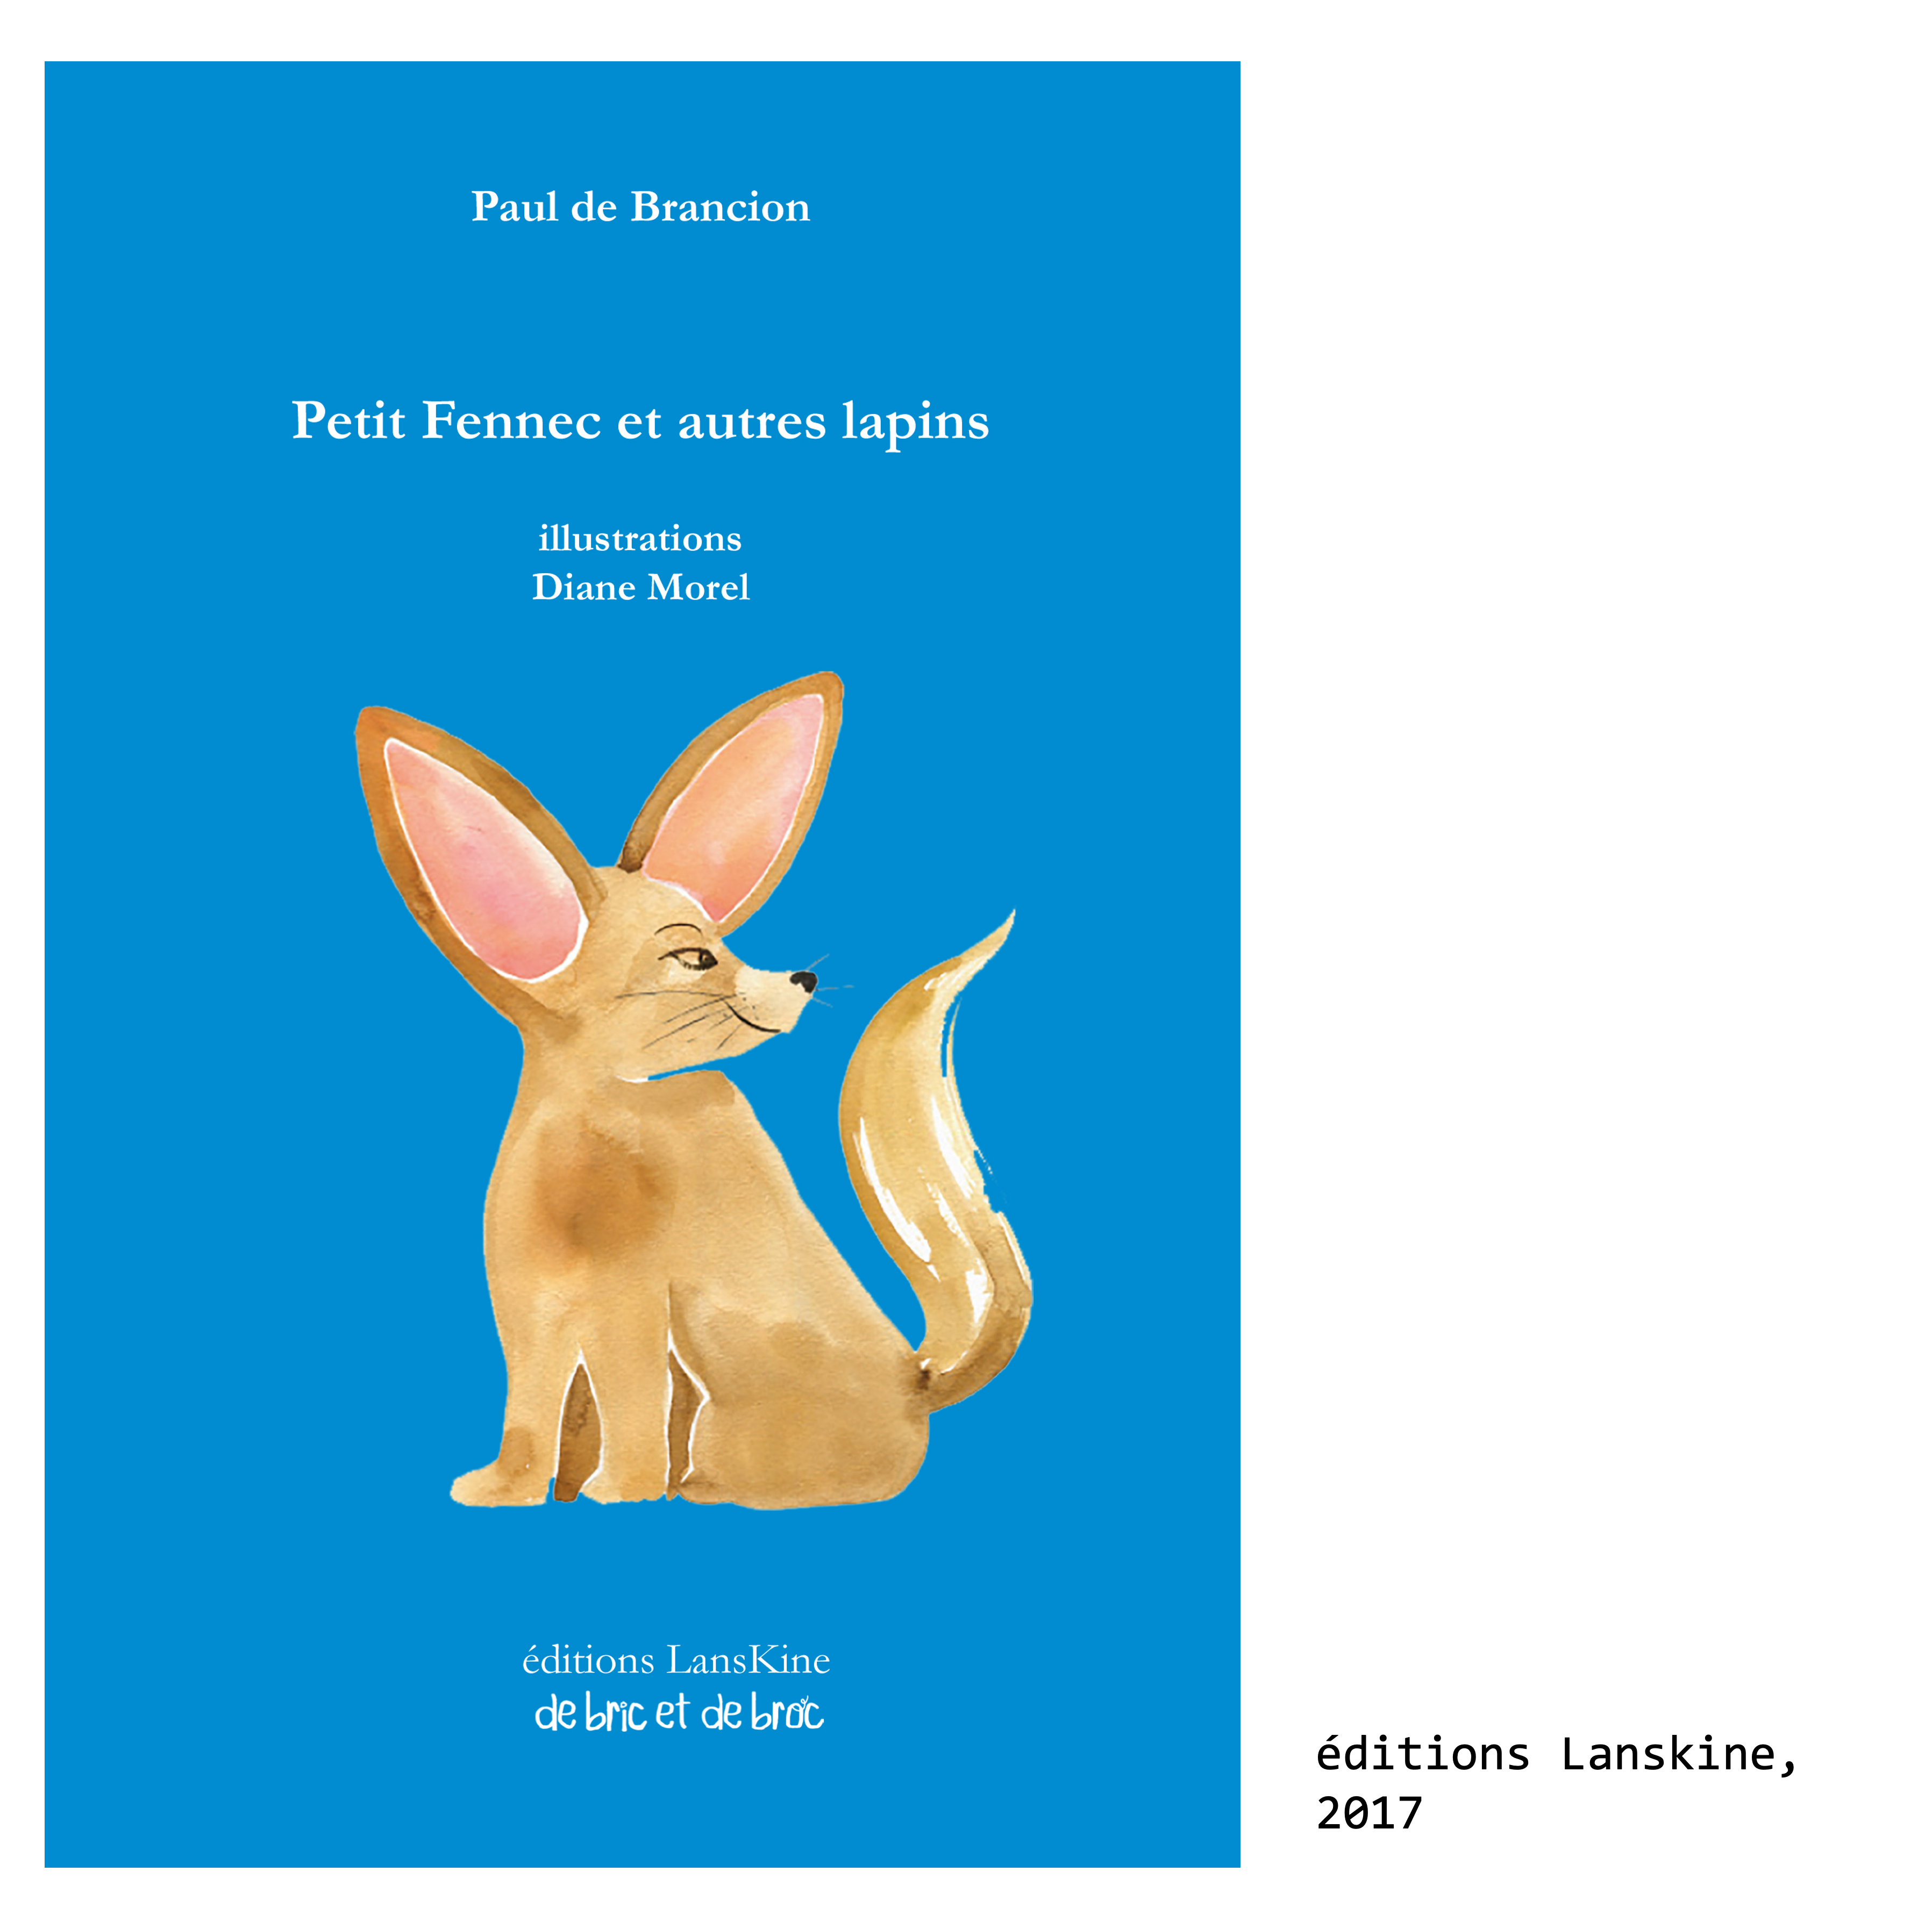 Couverture du livre de Paul de Brancion, écrivain et poète : Petit Fennec et autres lapins, éditions Lanskine, 2017